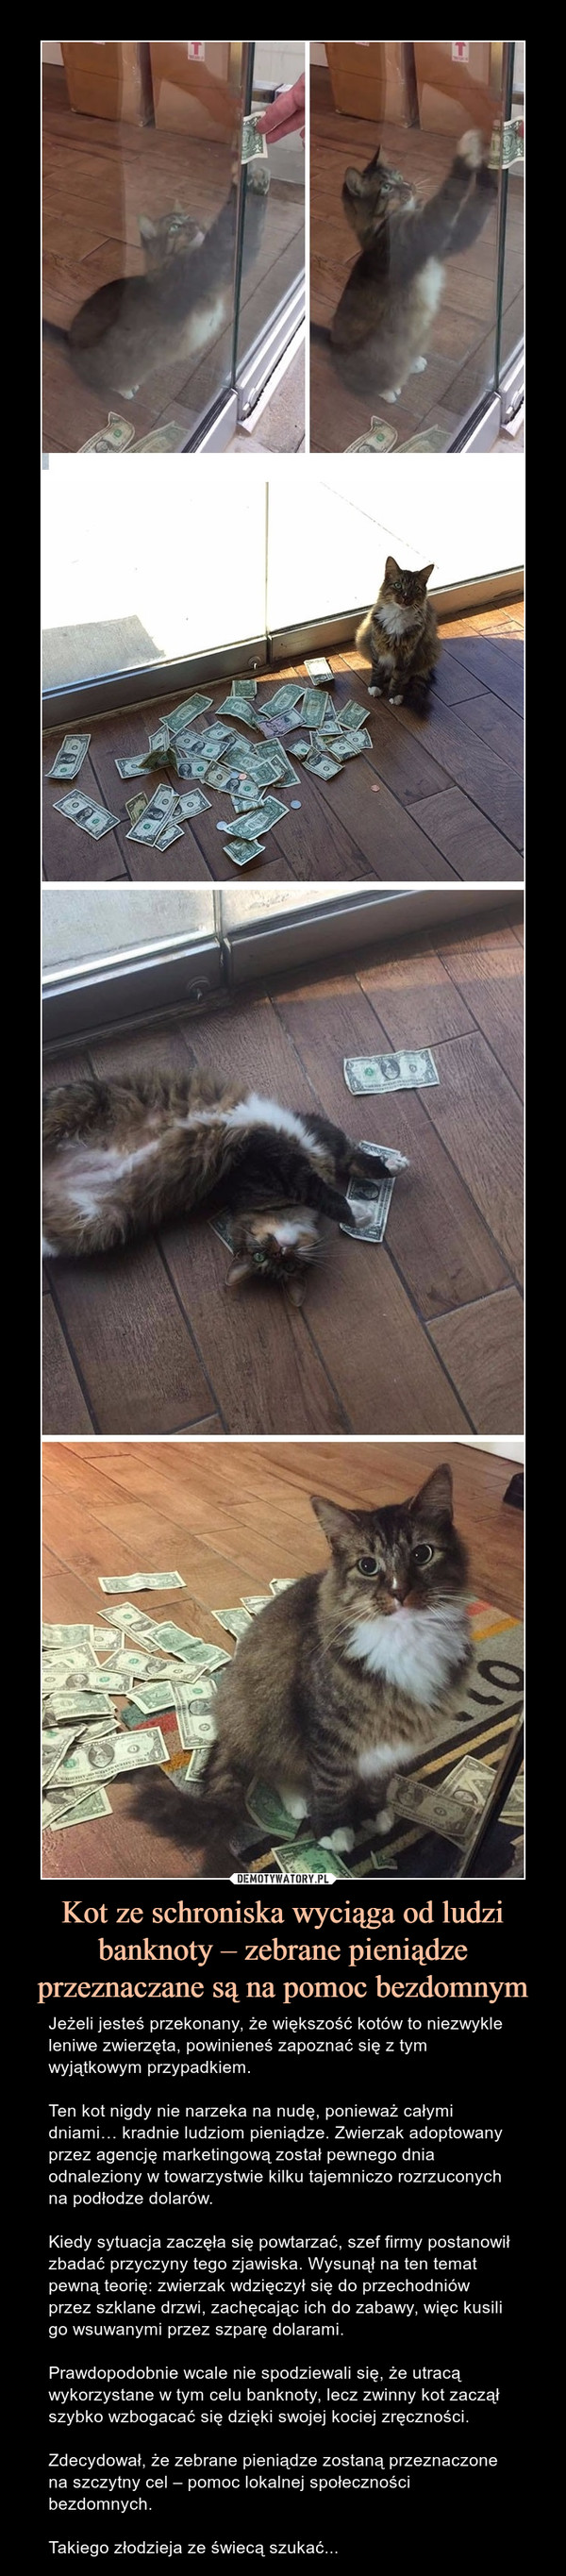 Kot ze schroniska wyciąga od ludzi banknoty – zebrane pieniądze przeznaczane są na pomoc bezdomnym